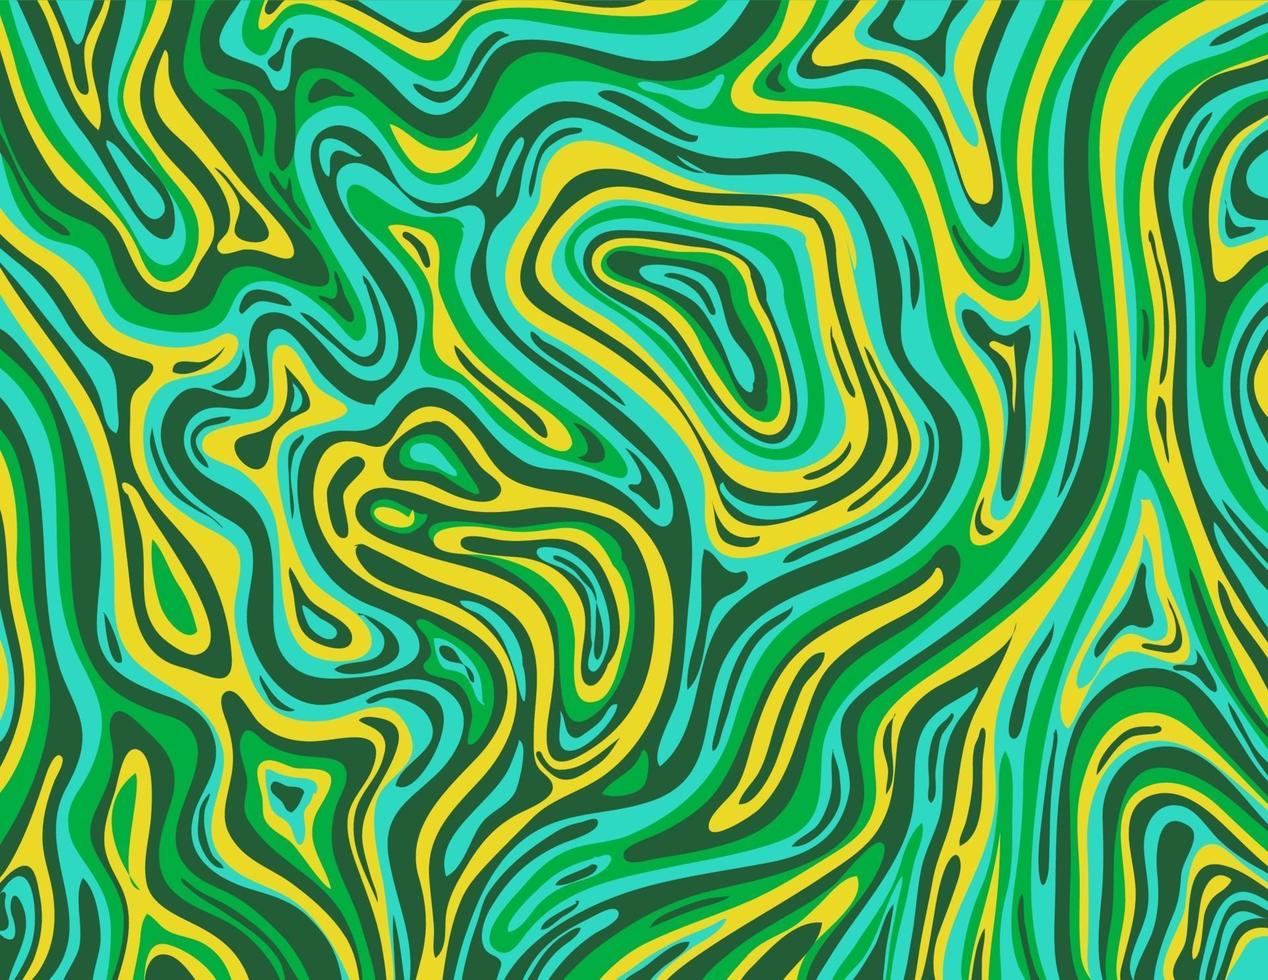 vert pomme et jaune cadmium inkscape suminagashi kintsugi encre japonaise papier marbré art abstrait vecteur